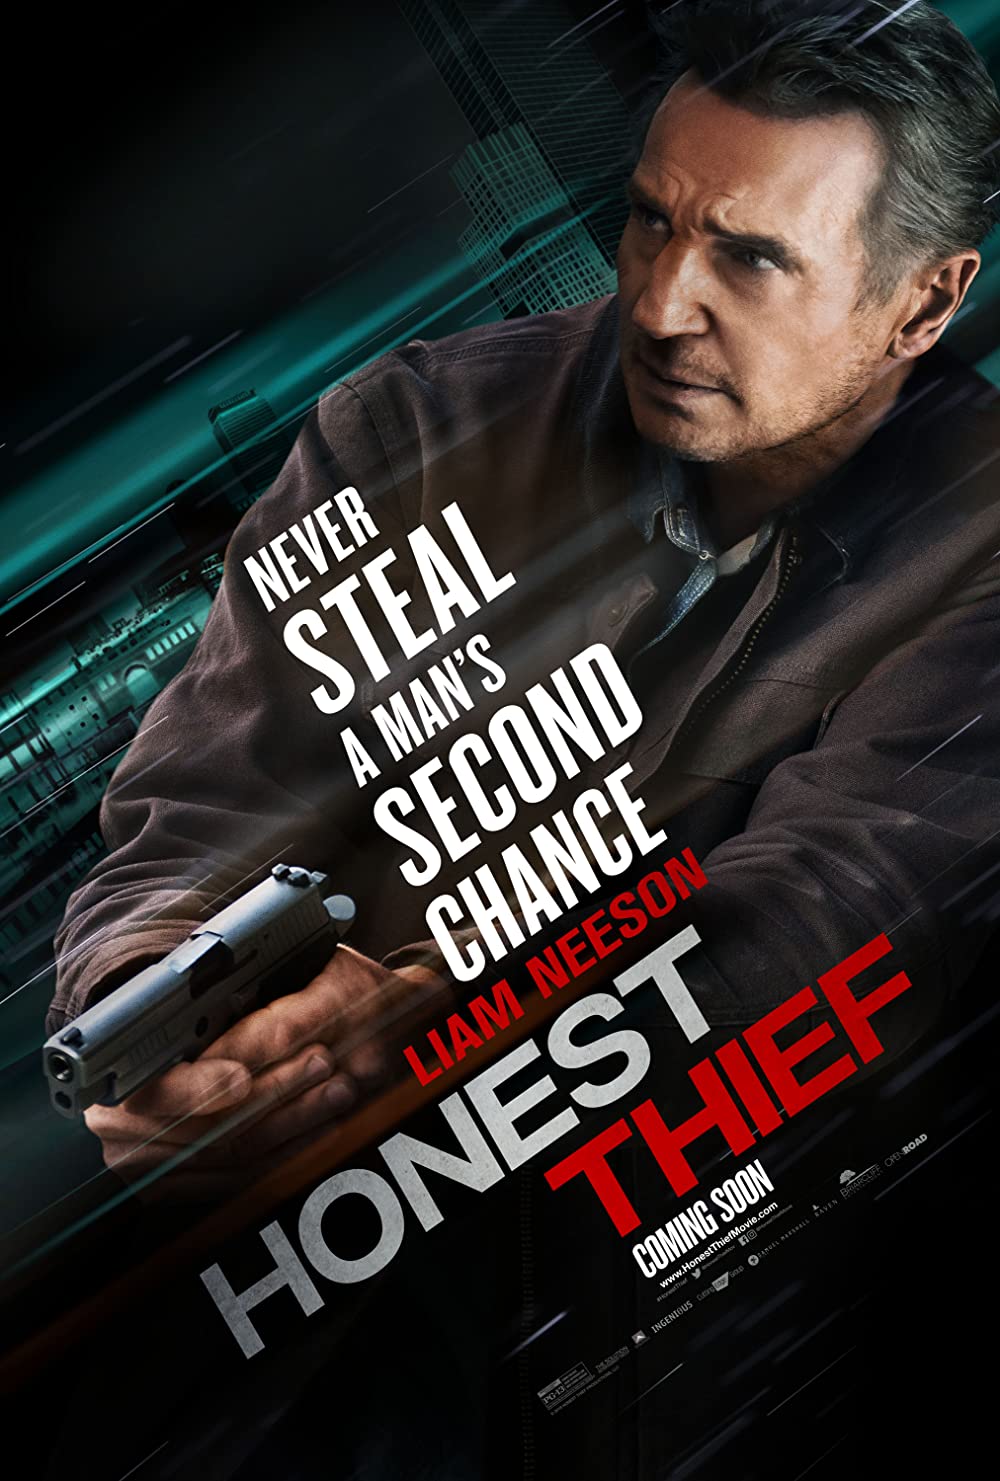 Filmbeschreibung zu Honest Thief